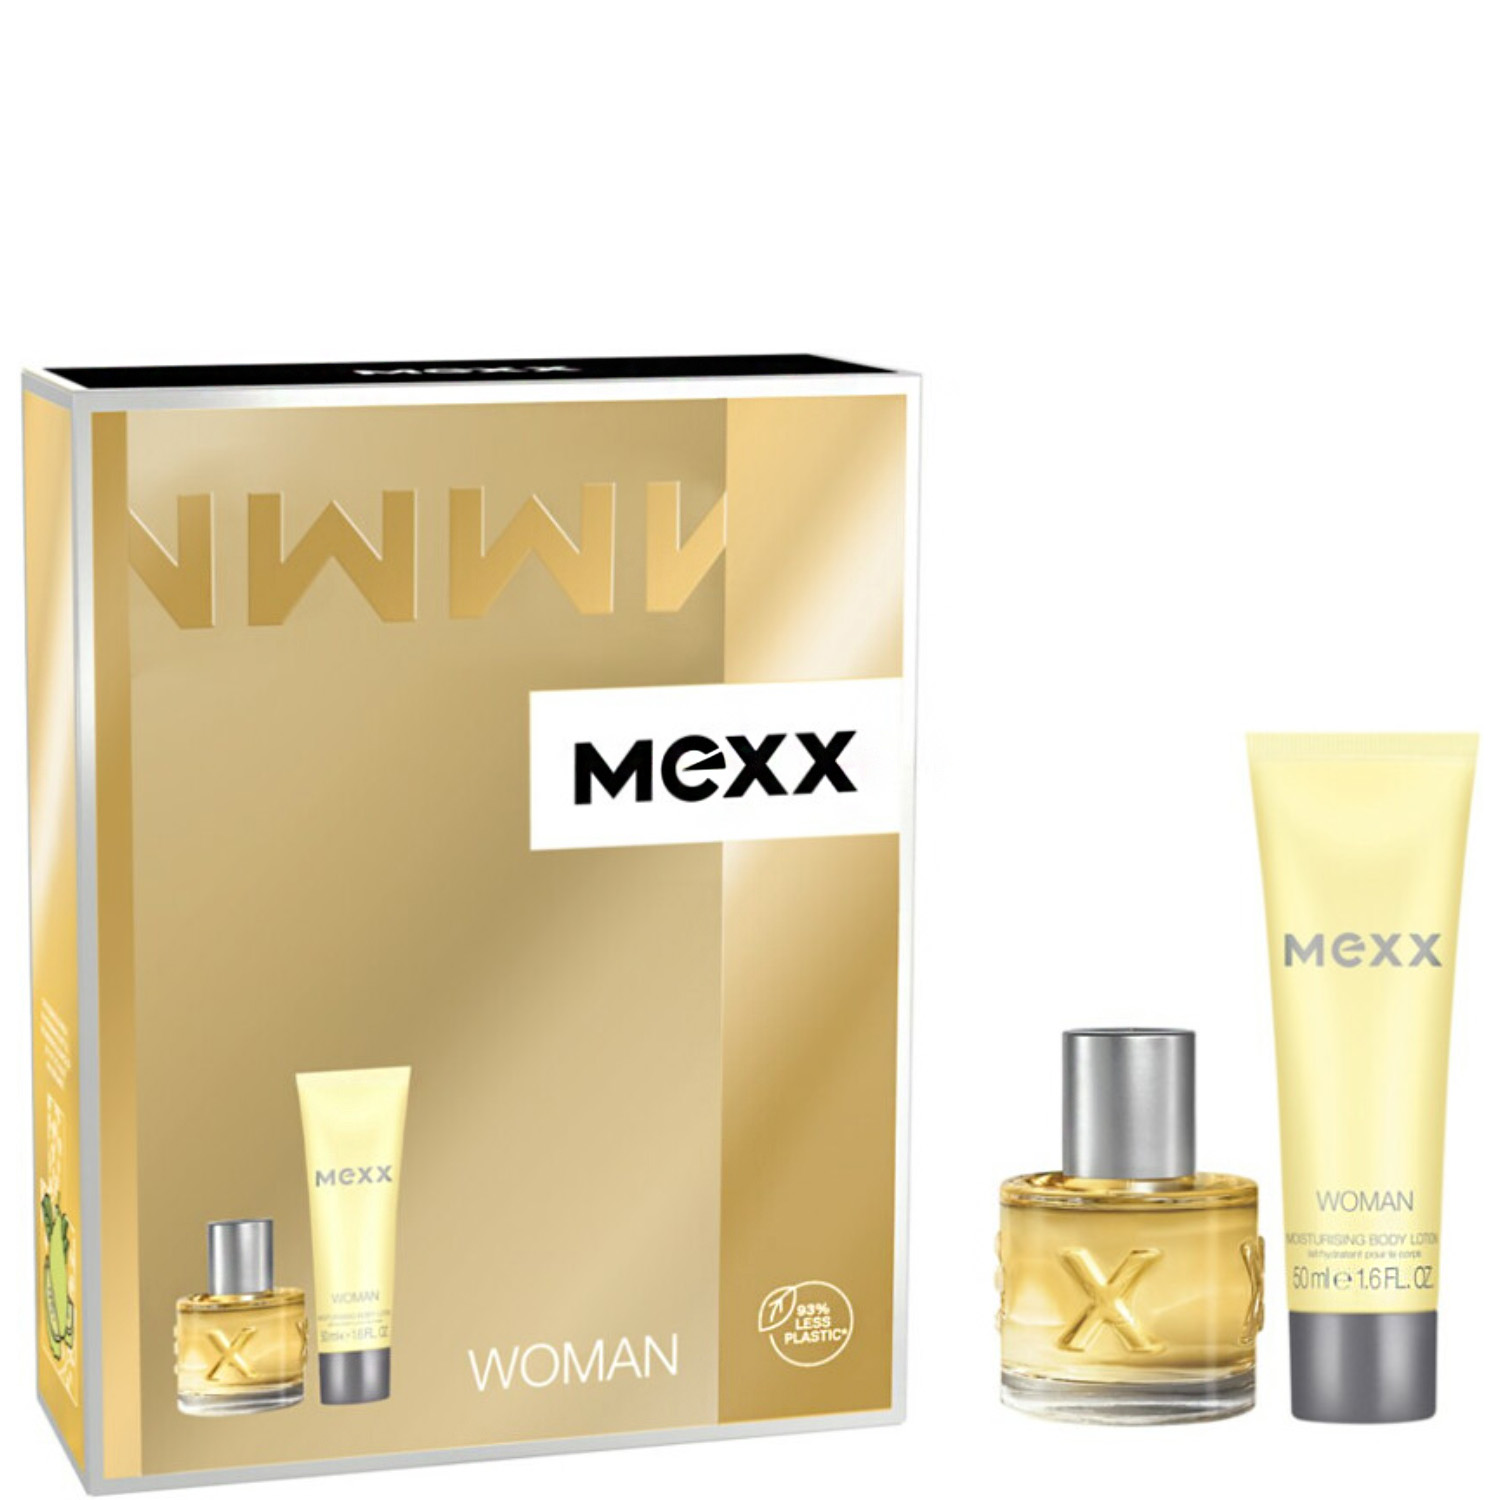 Mexx Woman Set Eau de Toilette 20ml & Body Lotion 50ml